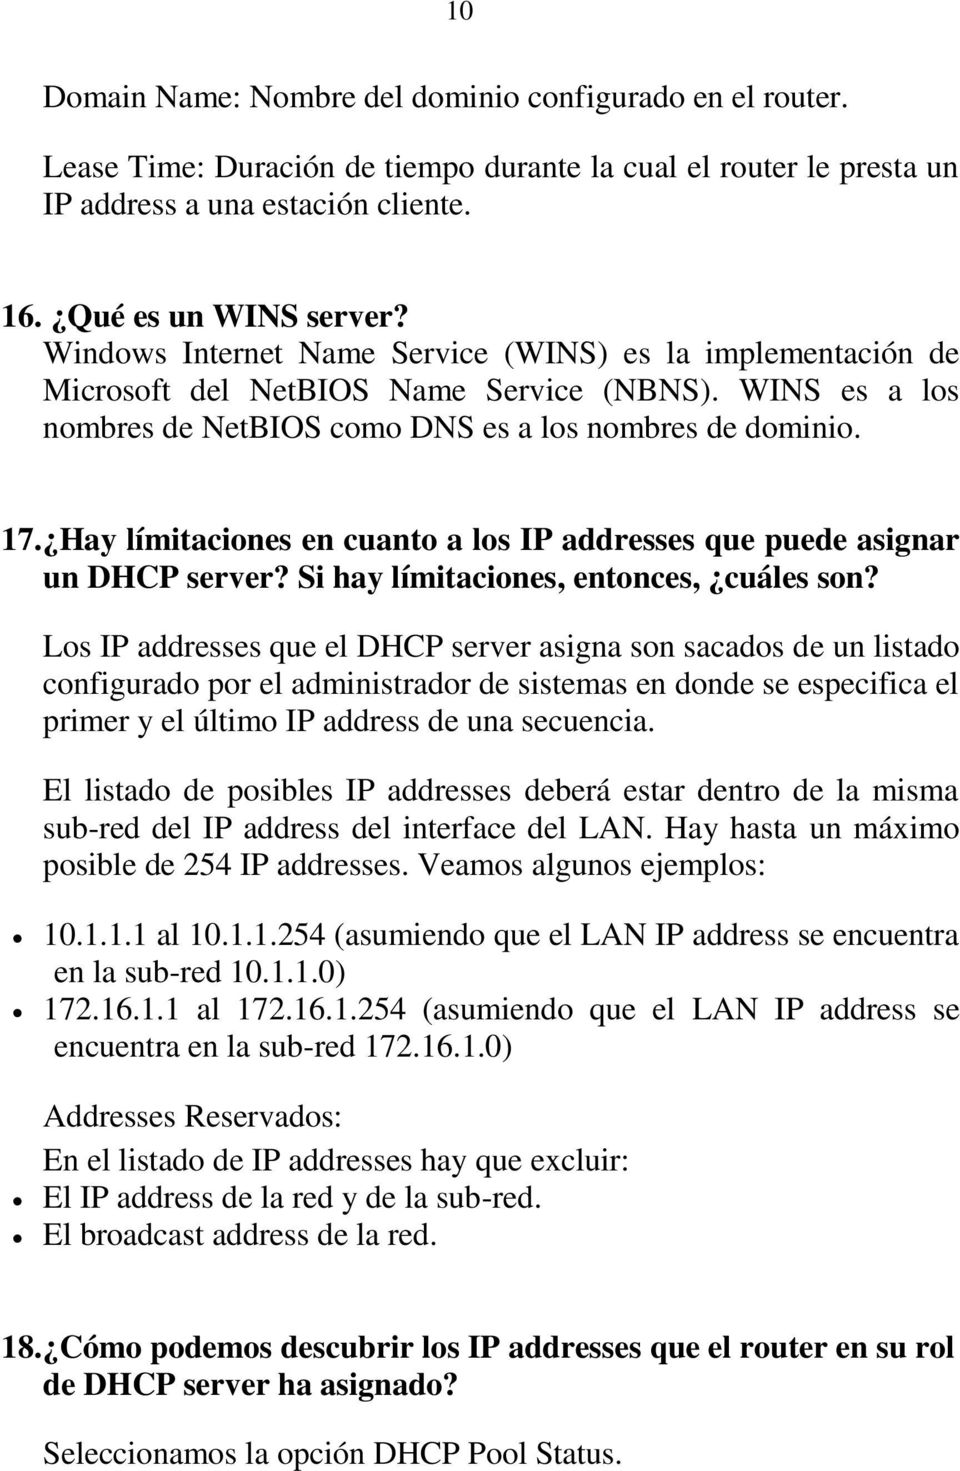 Hay límitaciones en cuanto a los IP addresses que puede asignar un DHCP server? Si hay límitaciones, entonces, cuáles son?